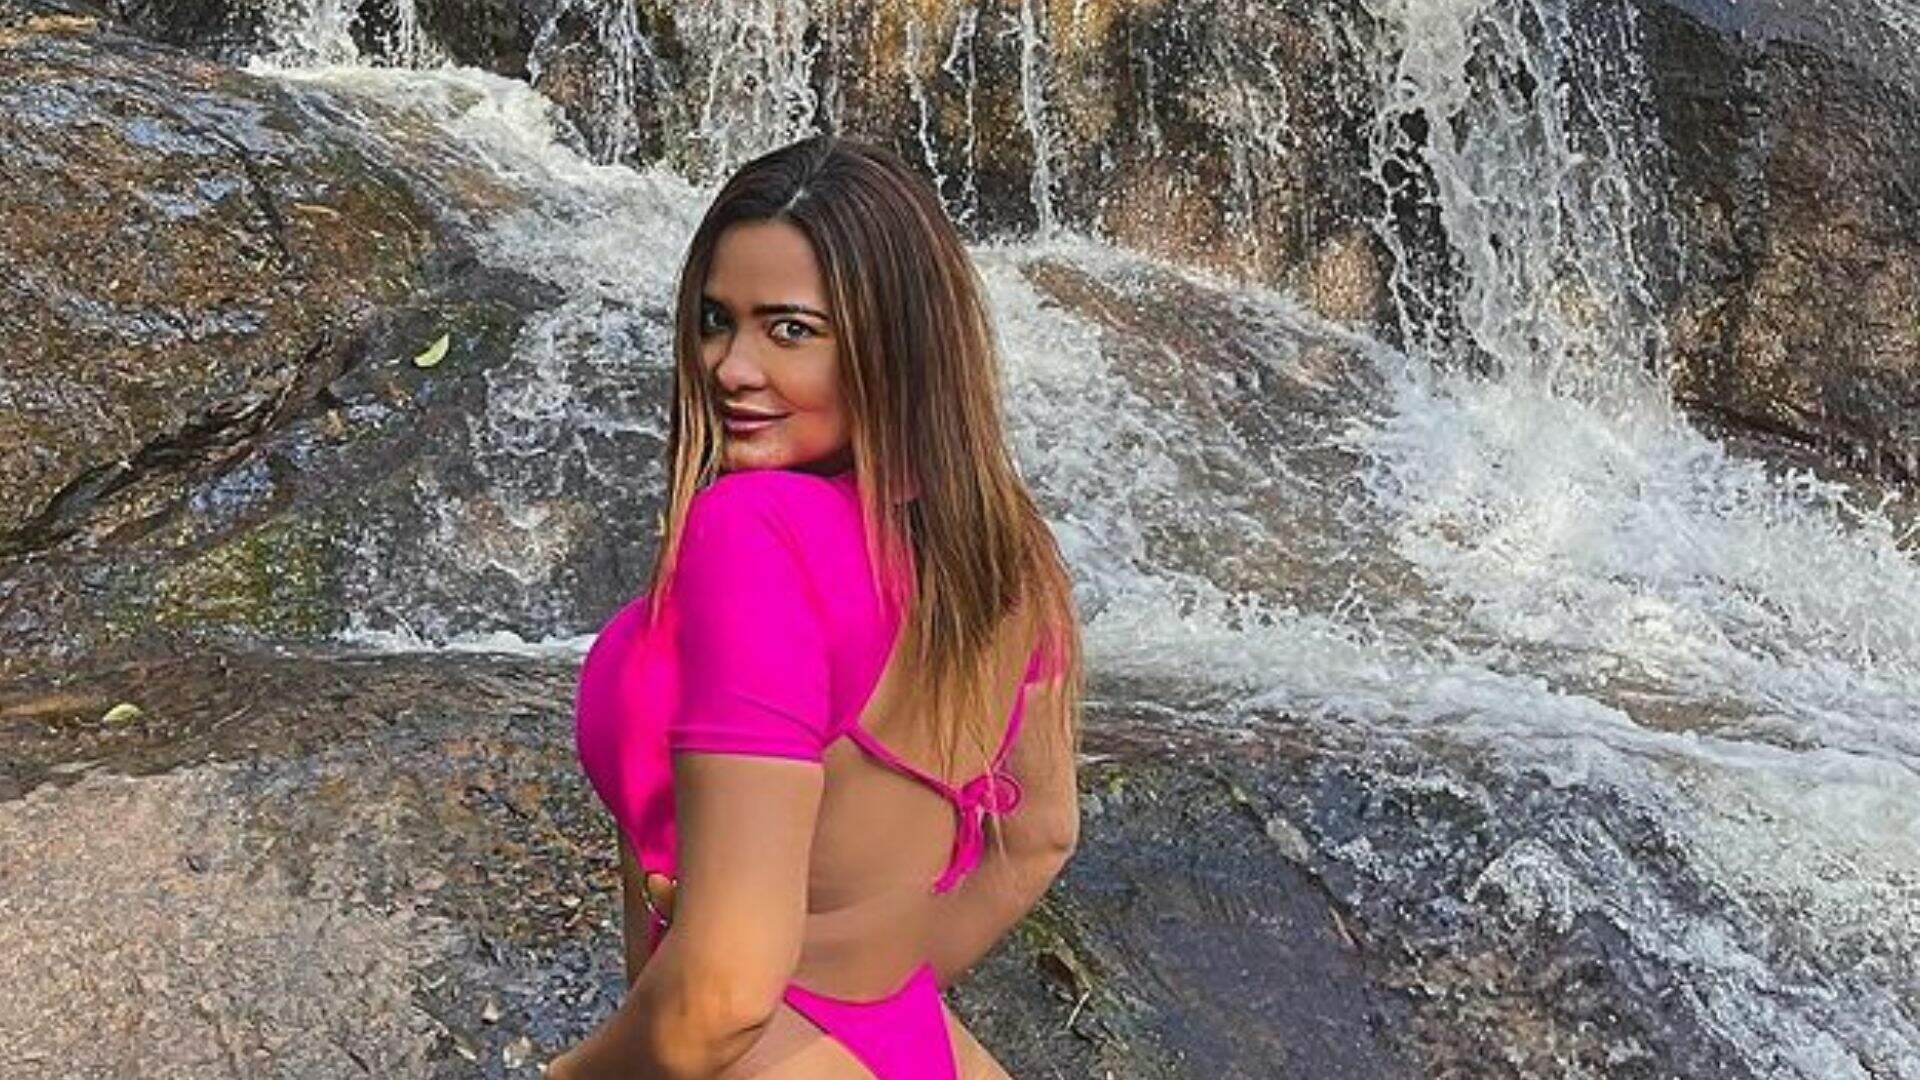 Oficialmente o maior bumbum do Instagram: Geisy Arruda cava calcinha no limite em foto no meio do mato - Metropolitana FM